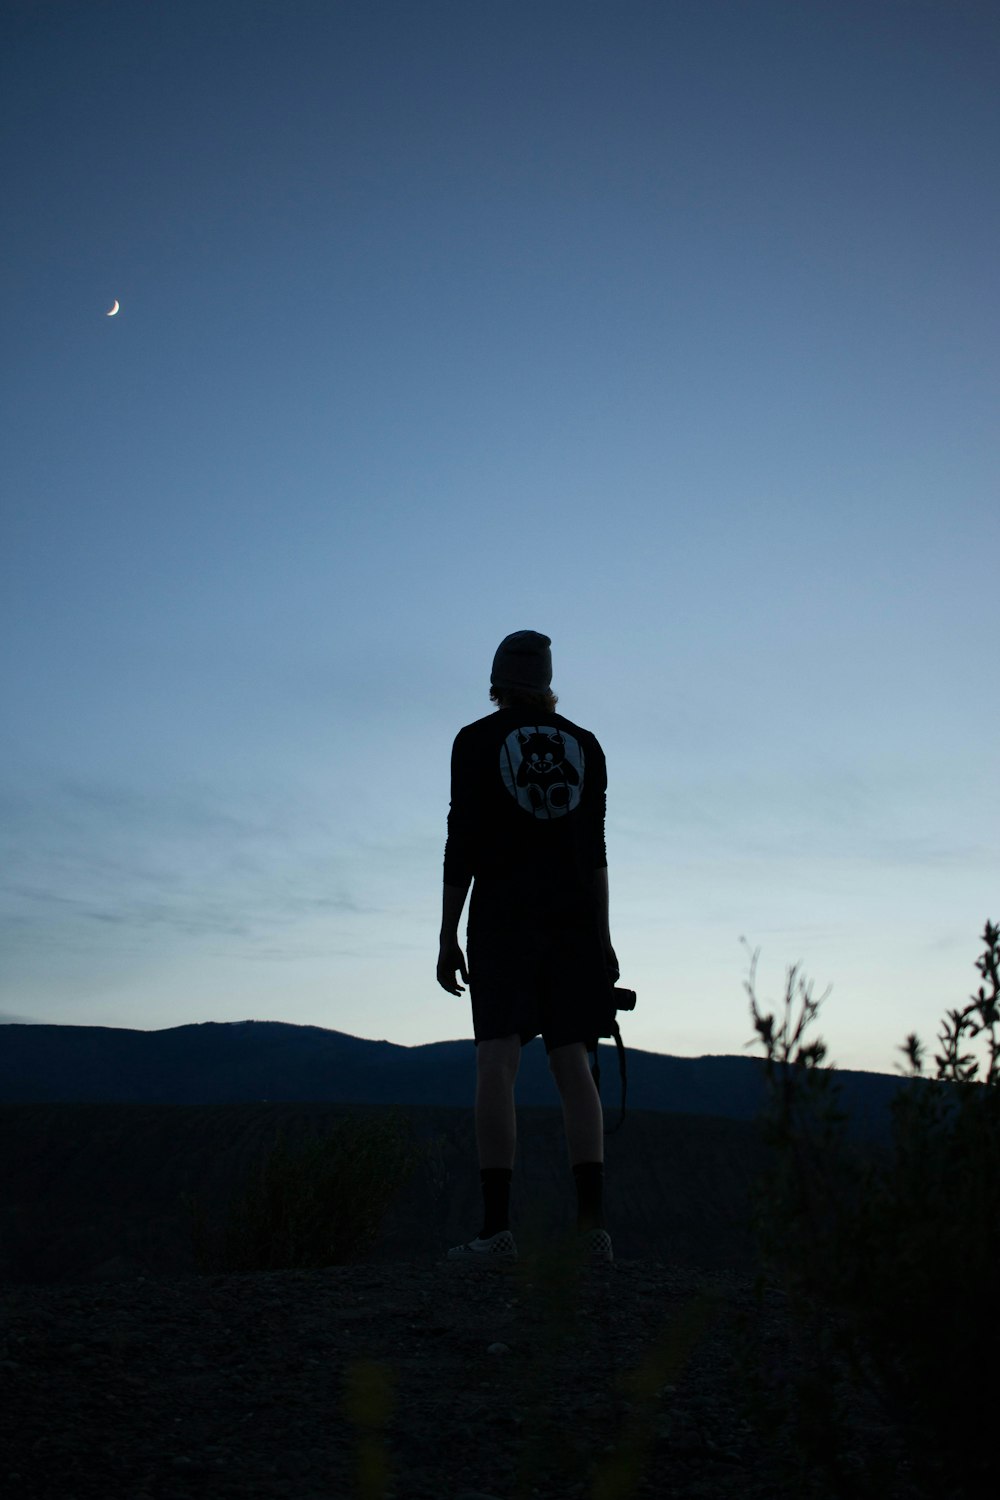 Mann im schwarzen Kapuzenpullover steht nachts auf einem Hügel